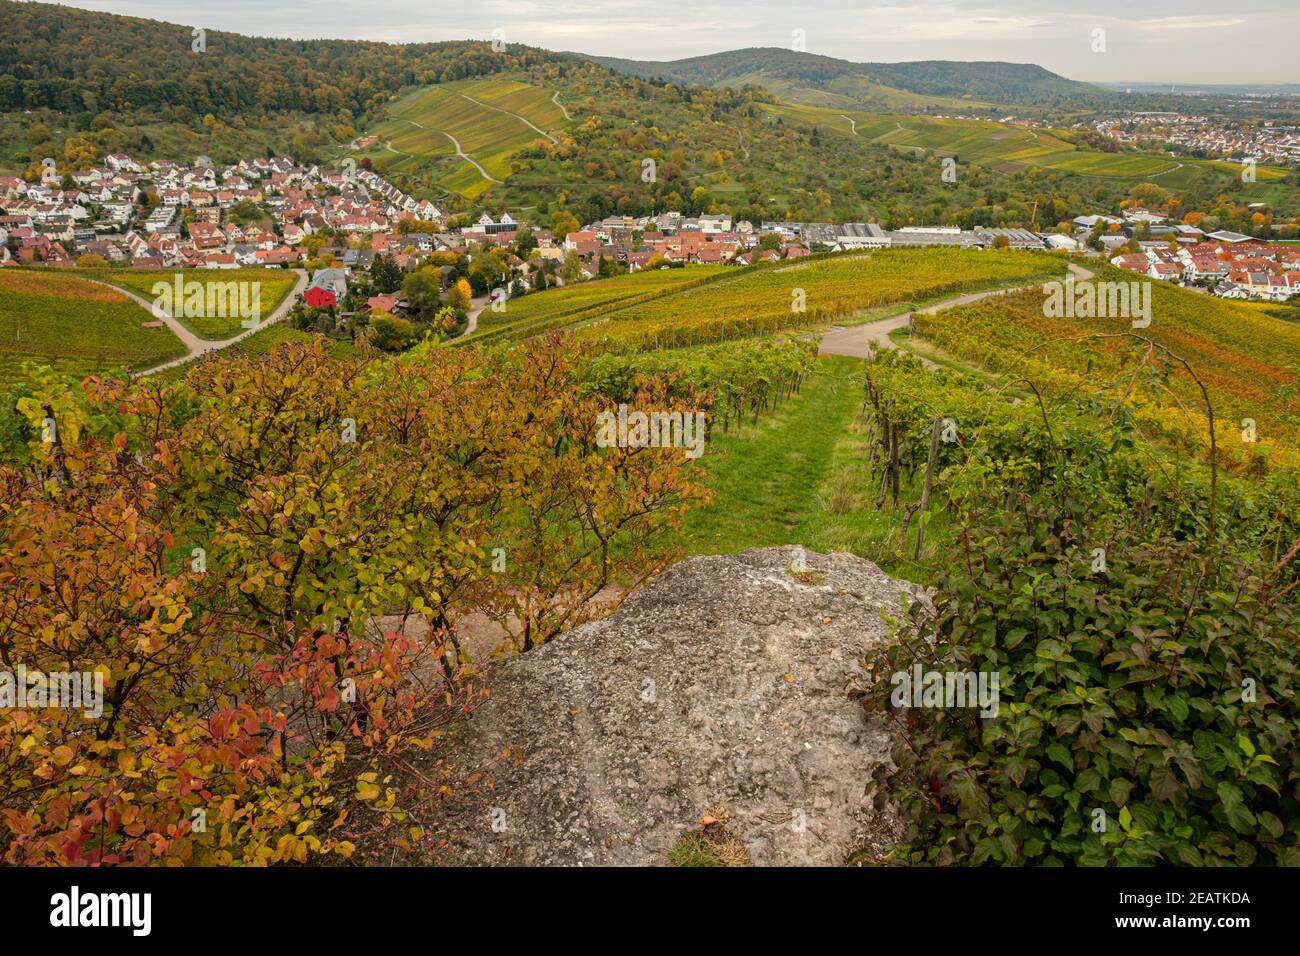 Vue du vignoble sur le village allemand Banque D'Images